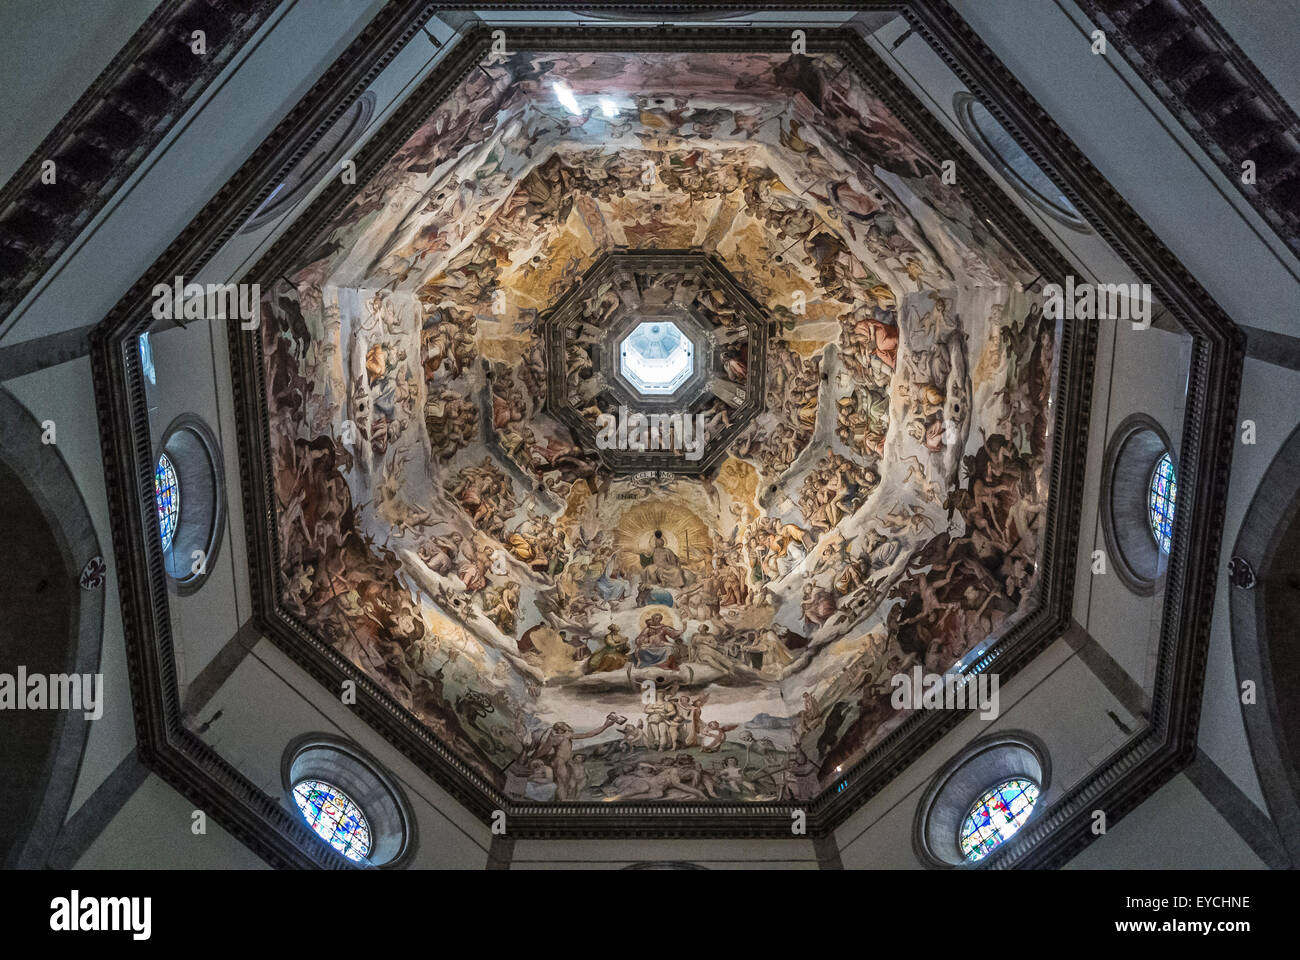 Innenraum der Kathedrale von Florenz Brunelleschi. Gemalt von Giorgio Vasari und Federico Zuccari. Florenz, Italien. Stockfoto